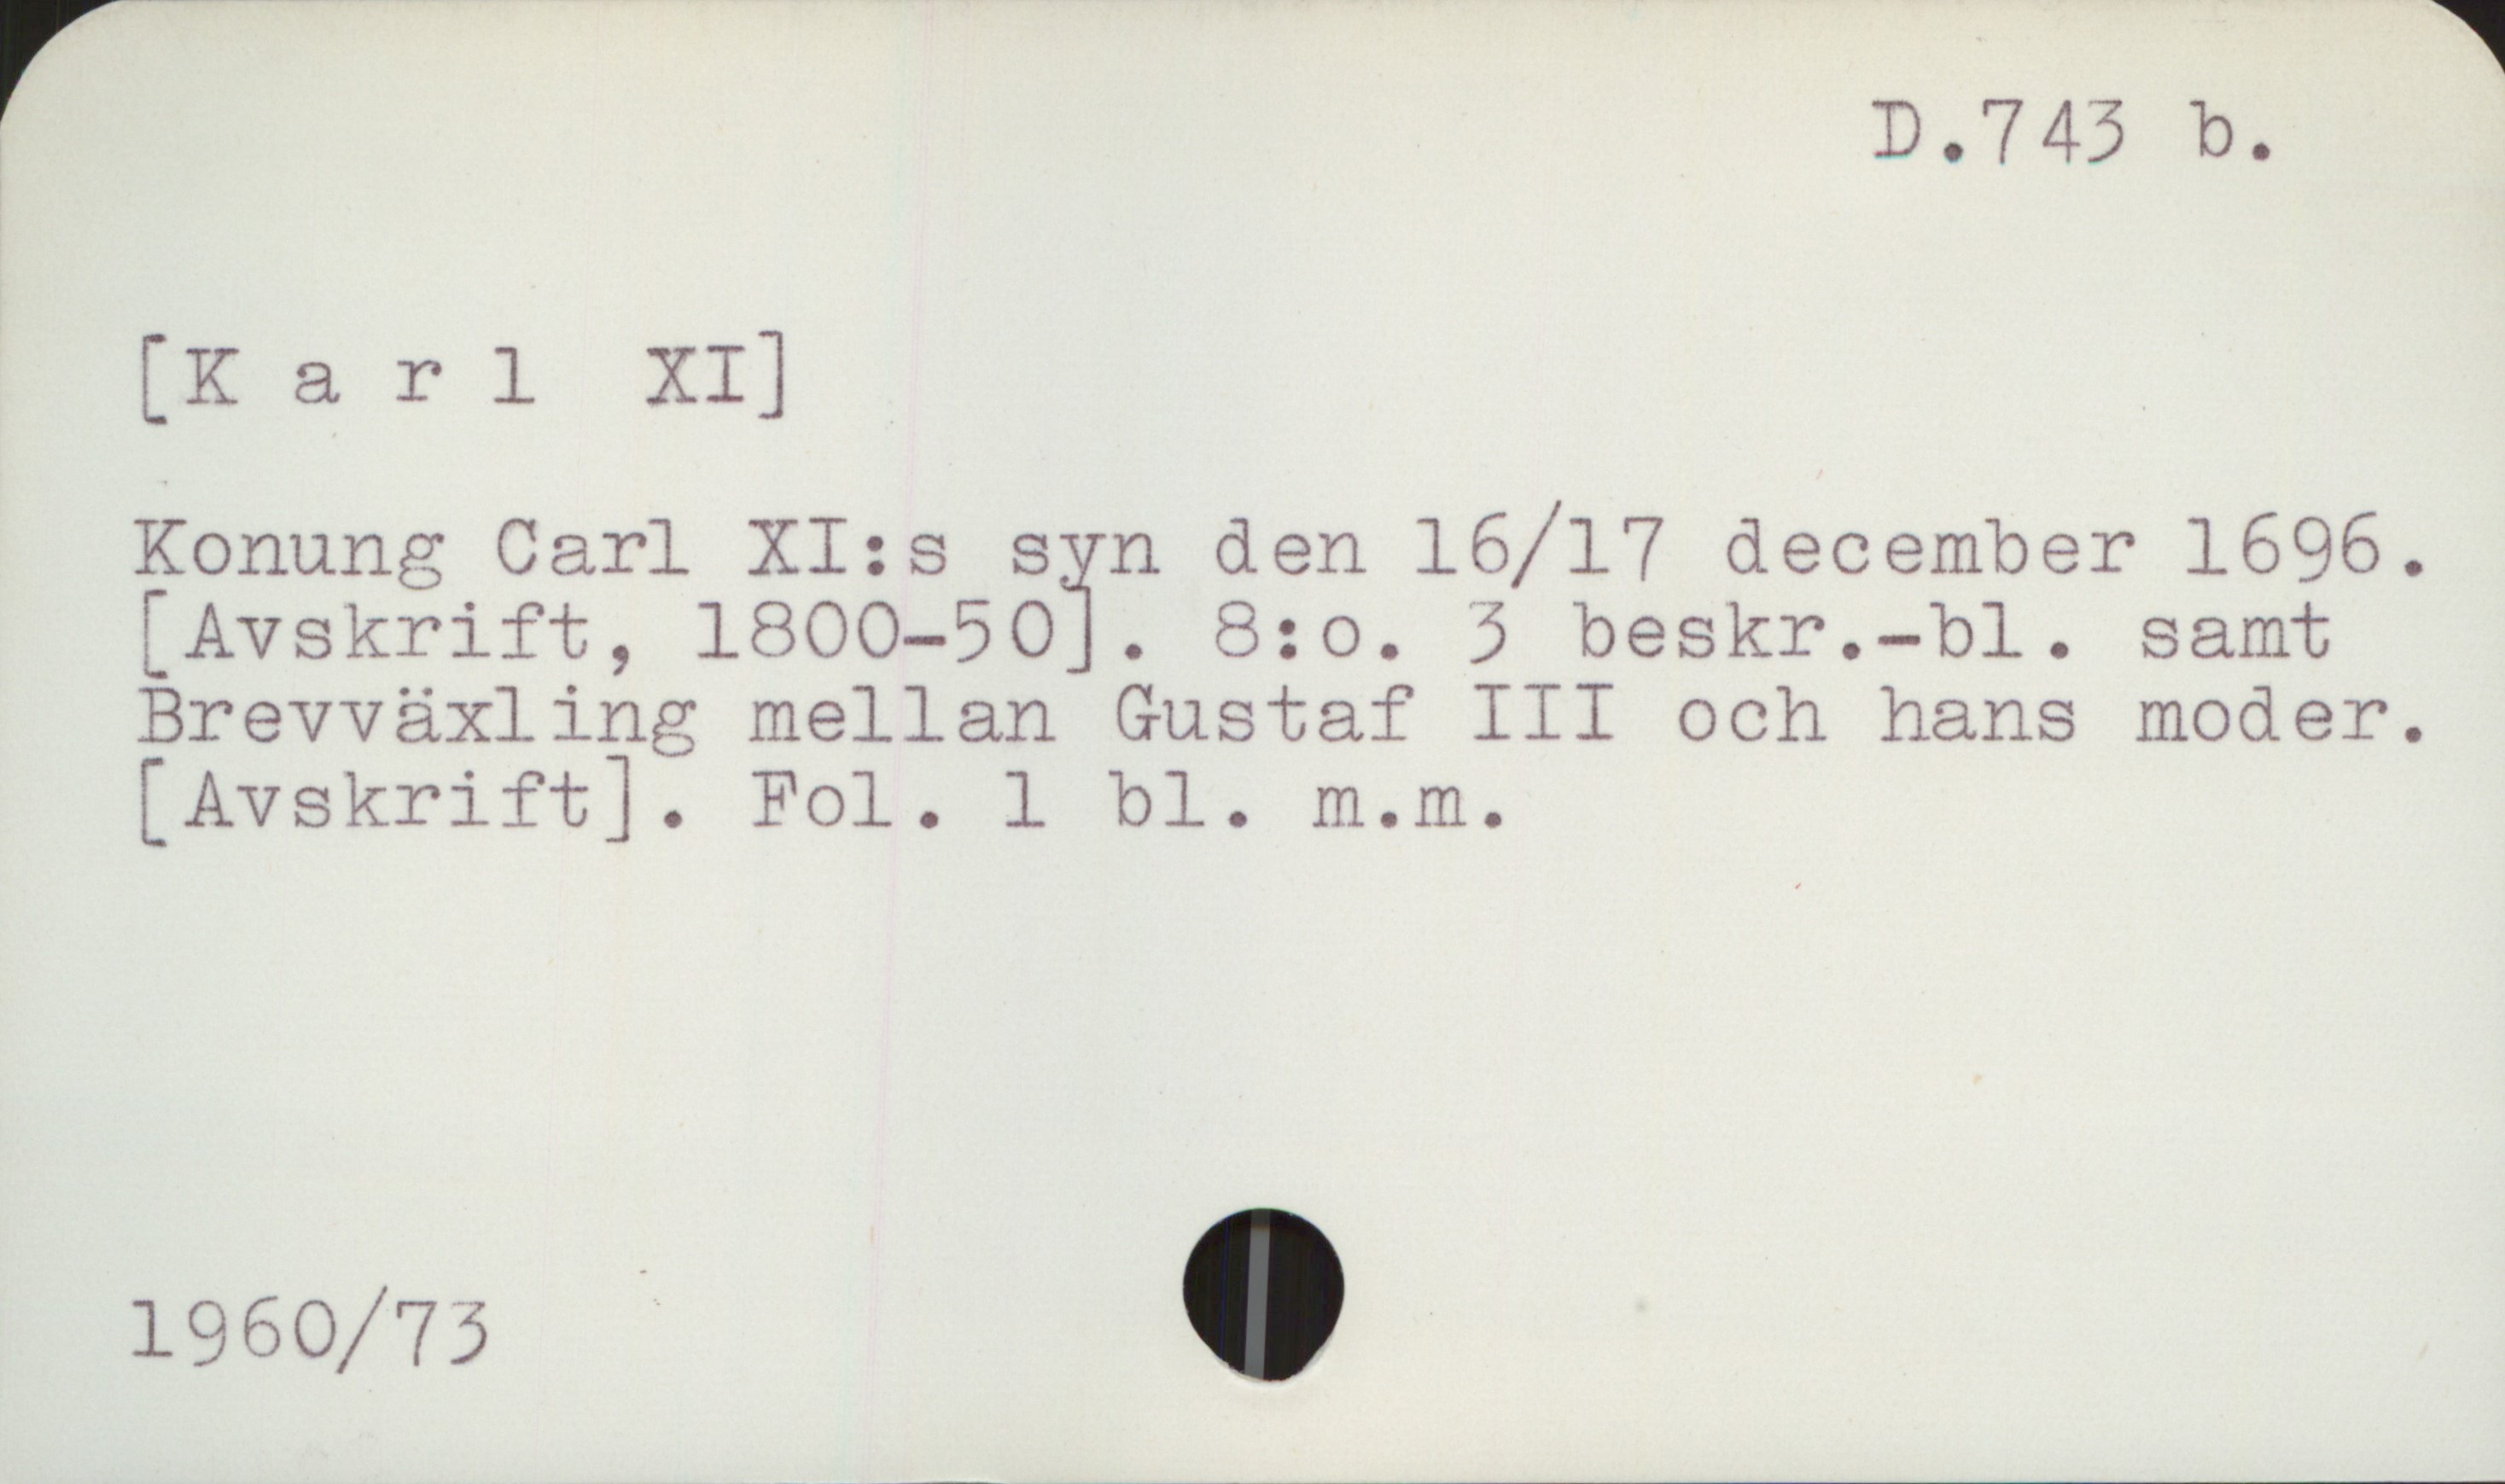  D.7 43 b.
[K a rl XI]
Konung Carl XI:s syn den 16/17 december 1696.
[ Avskrift, lBOO-SOï. 8:0. 3 beskr.-bl. samt
Brevväxling mellan Gustaf III och hans moder.
[Avskrift]. Fol. 1 bl. m.m.
1960/73 -

